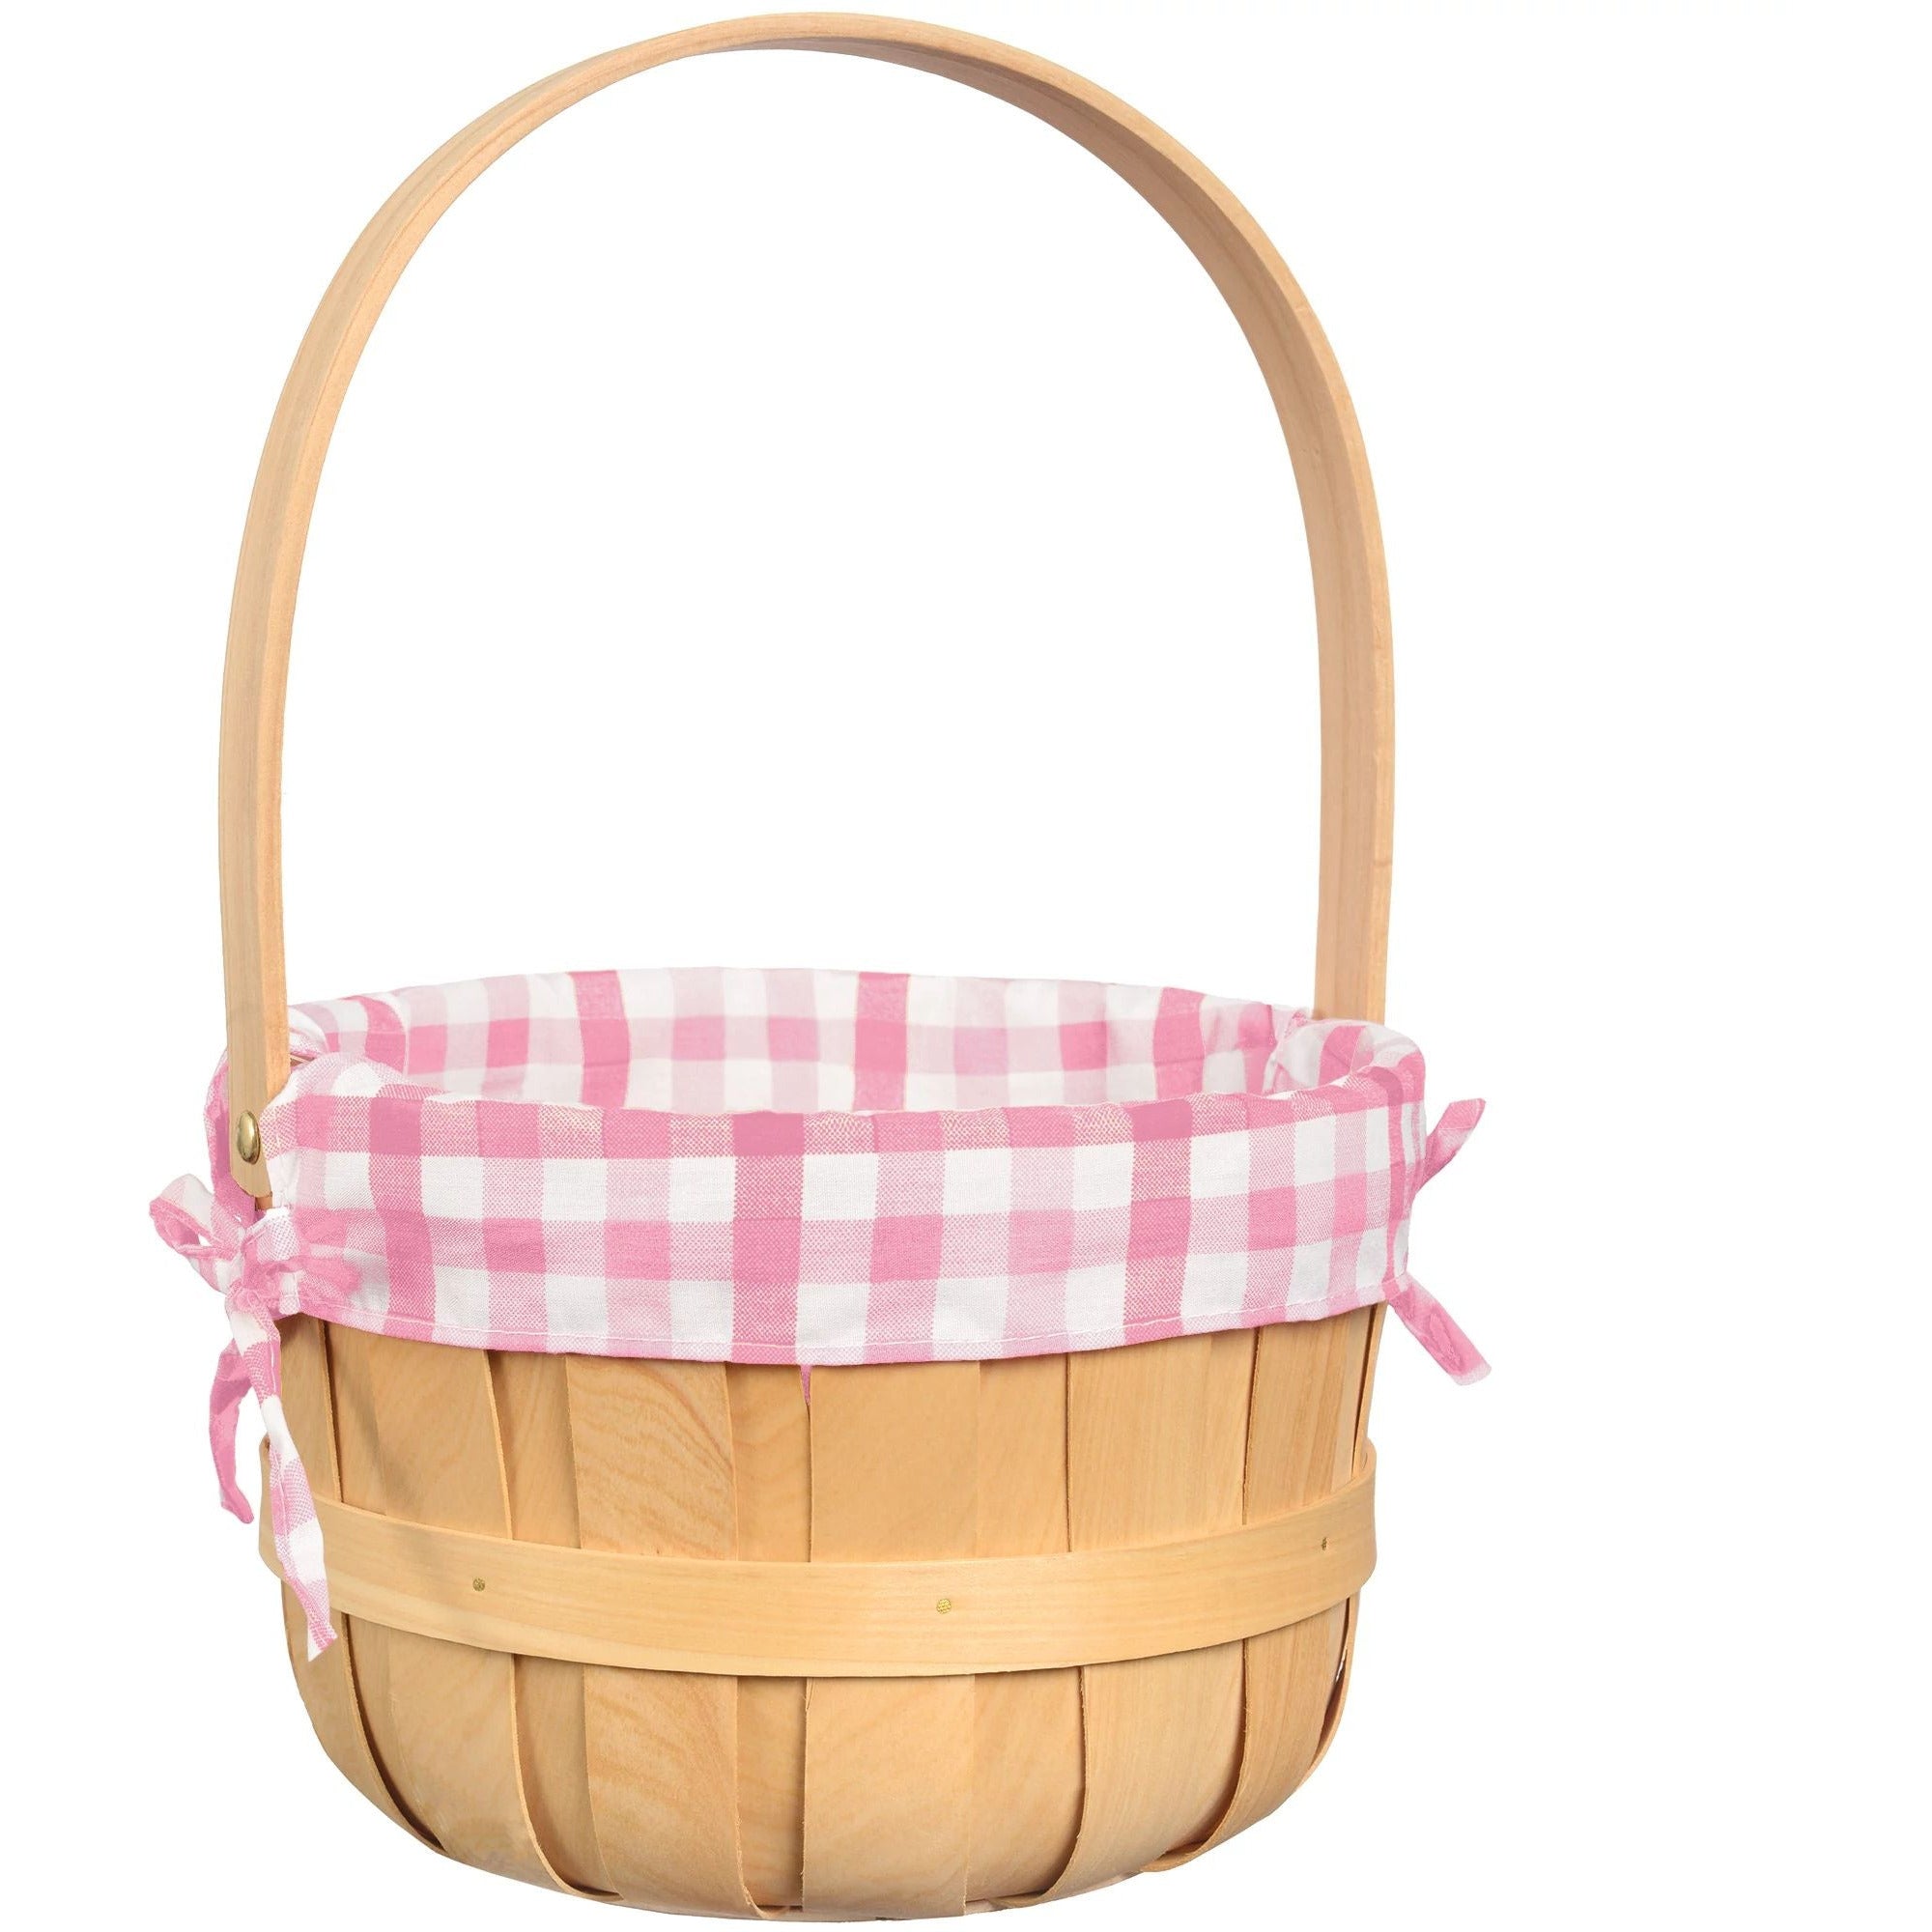 AMSCAN Round Wood Chip Basket - Pink